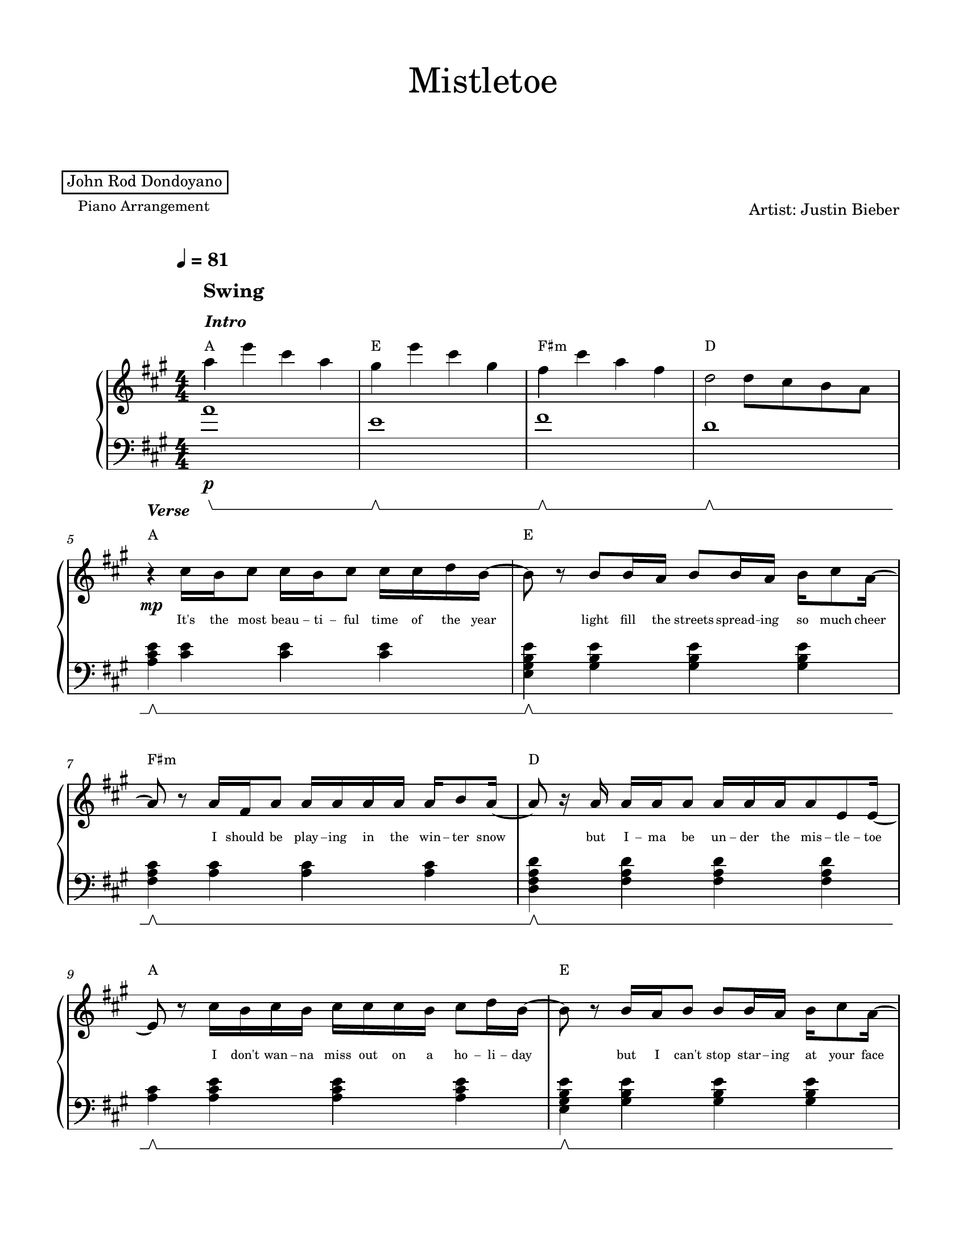 Justin Bieber - Mistletoe (PIANO SHEET) by John Rod Dondoyano